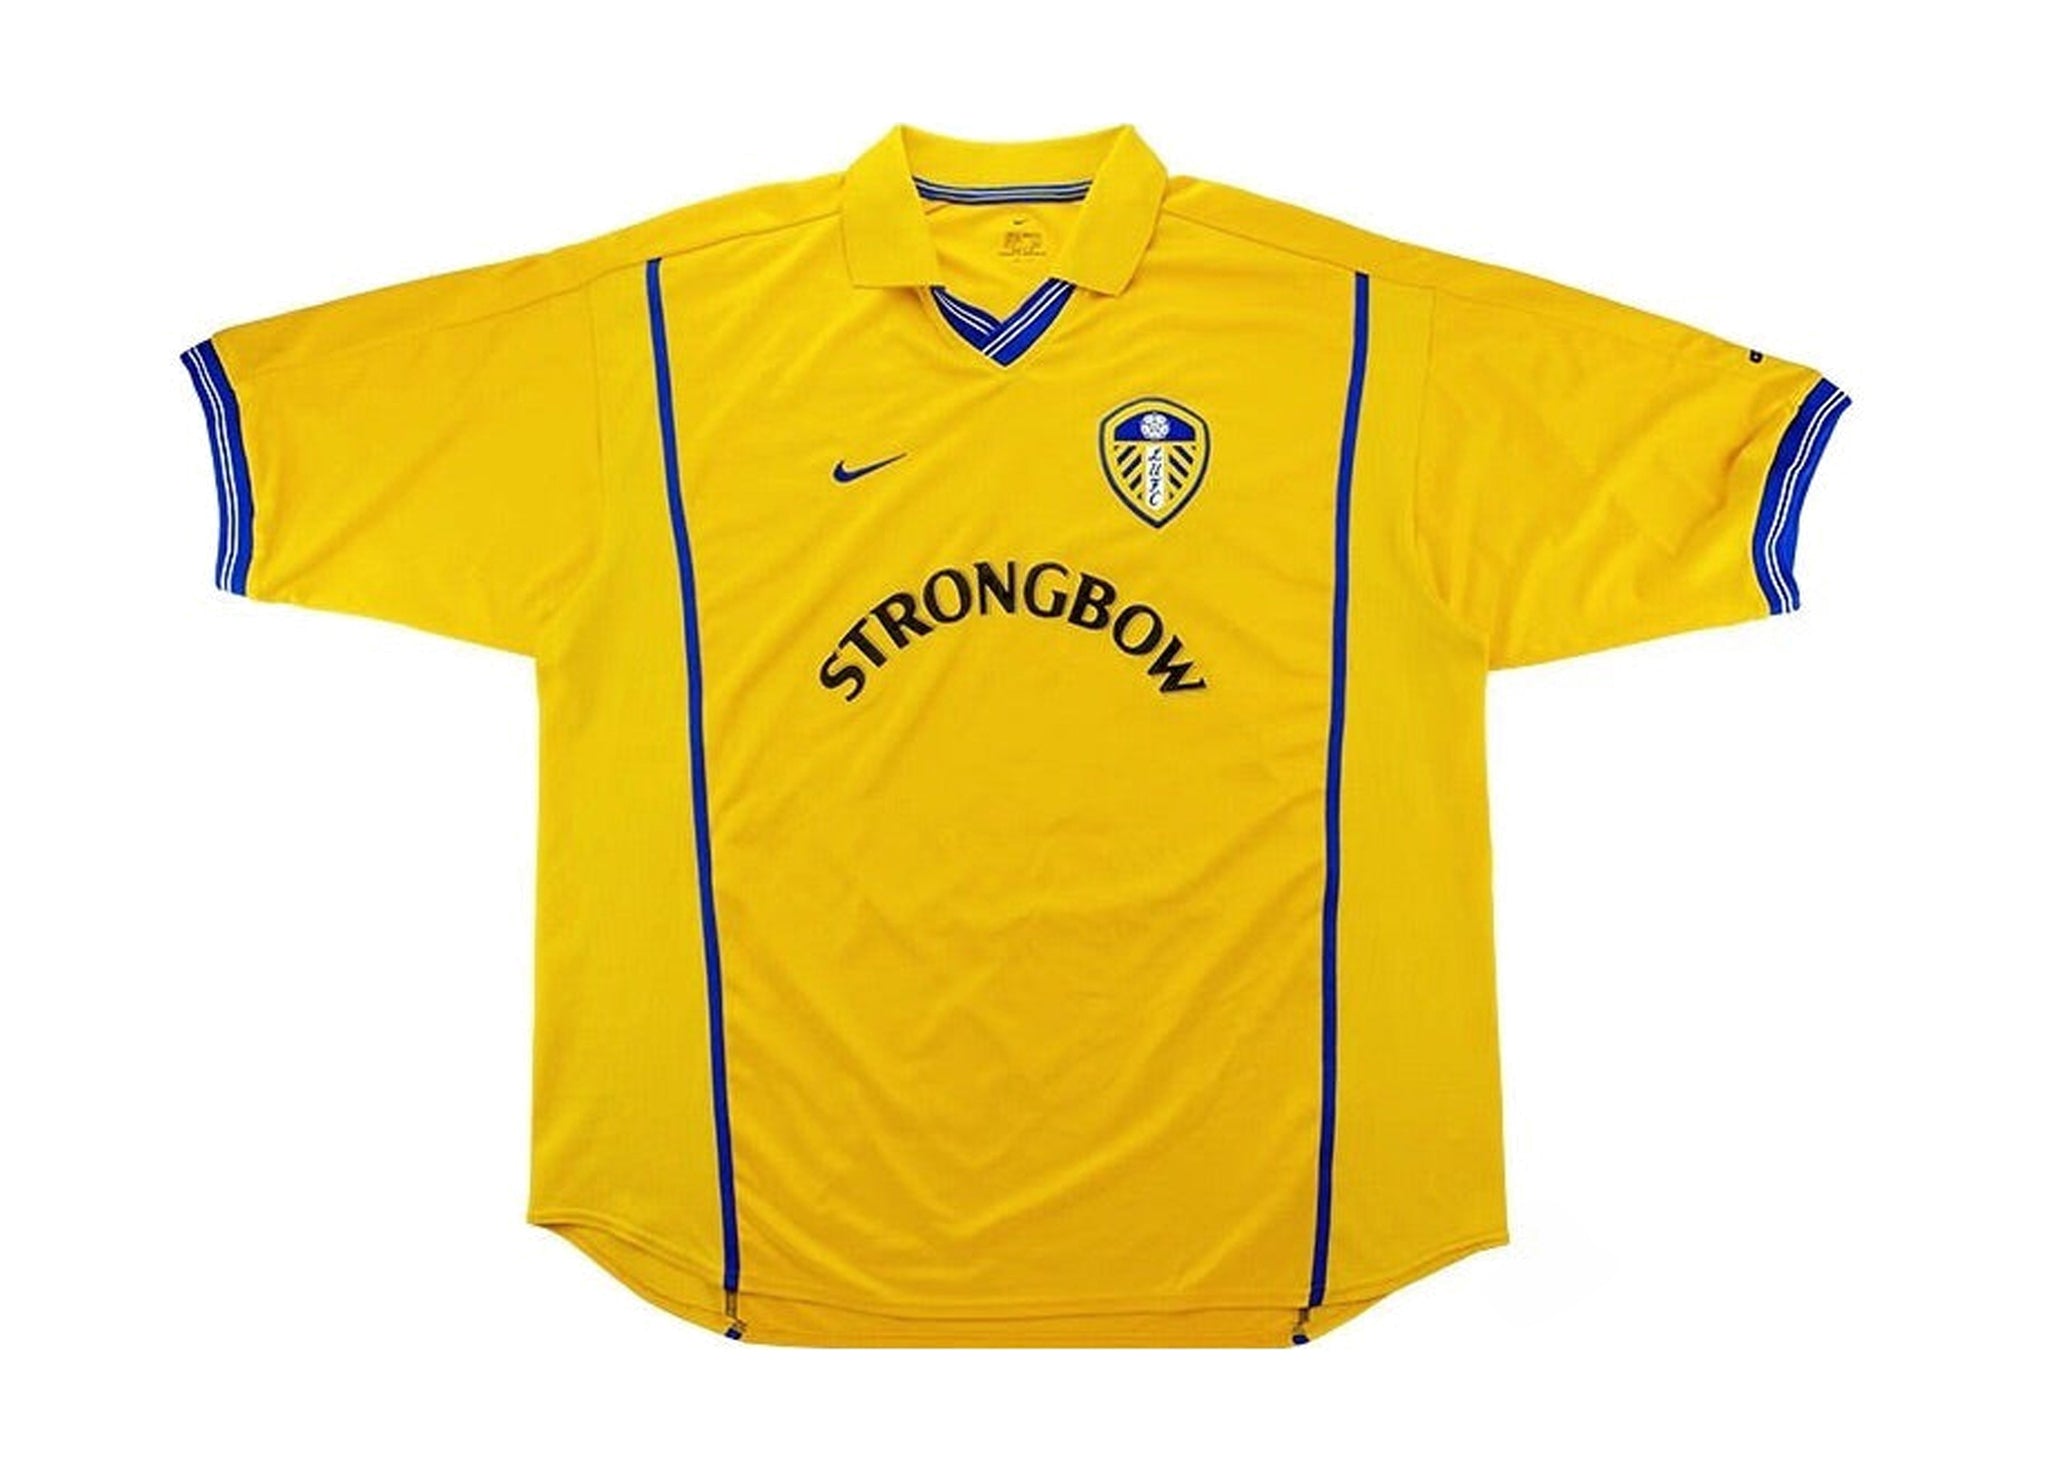 2000-2002 Leeds United Football Club